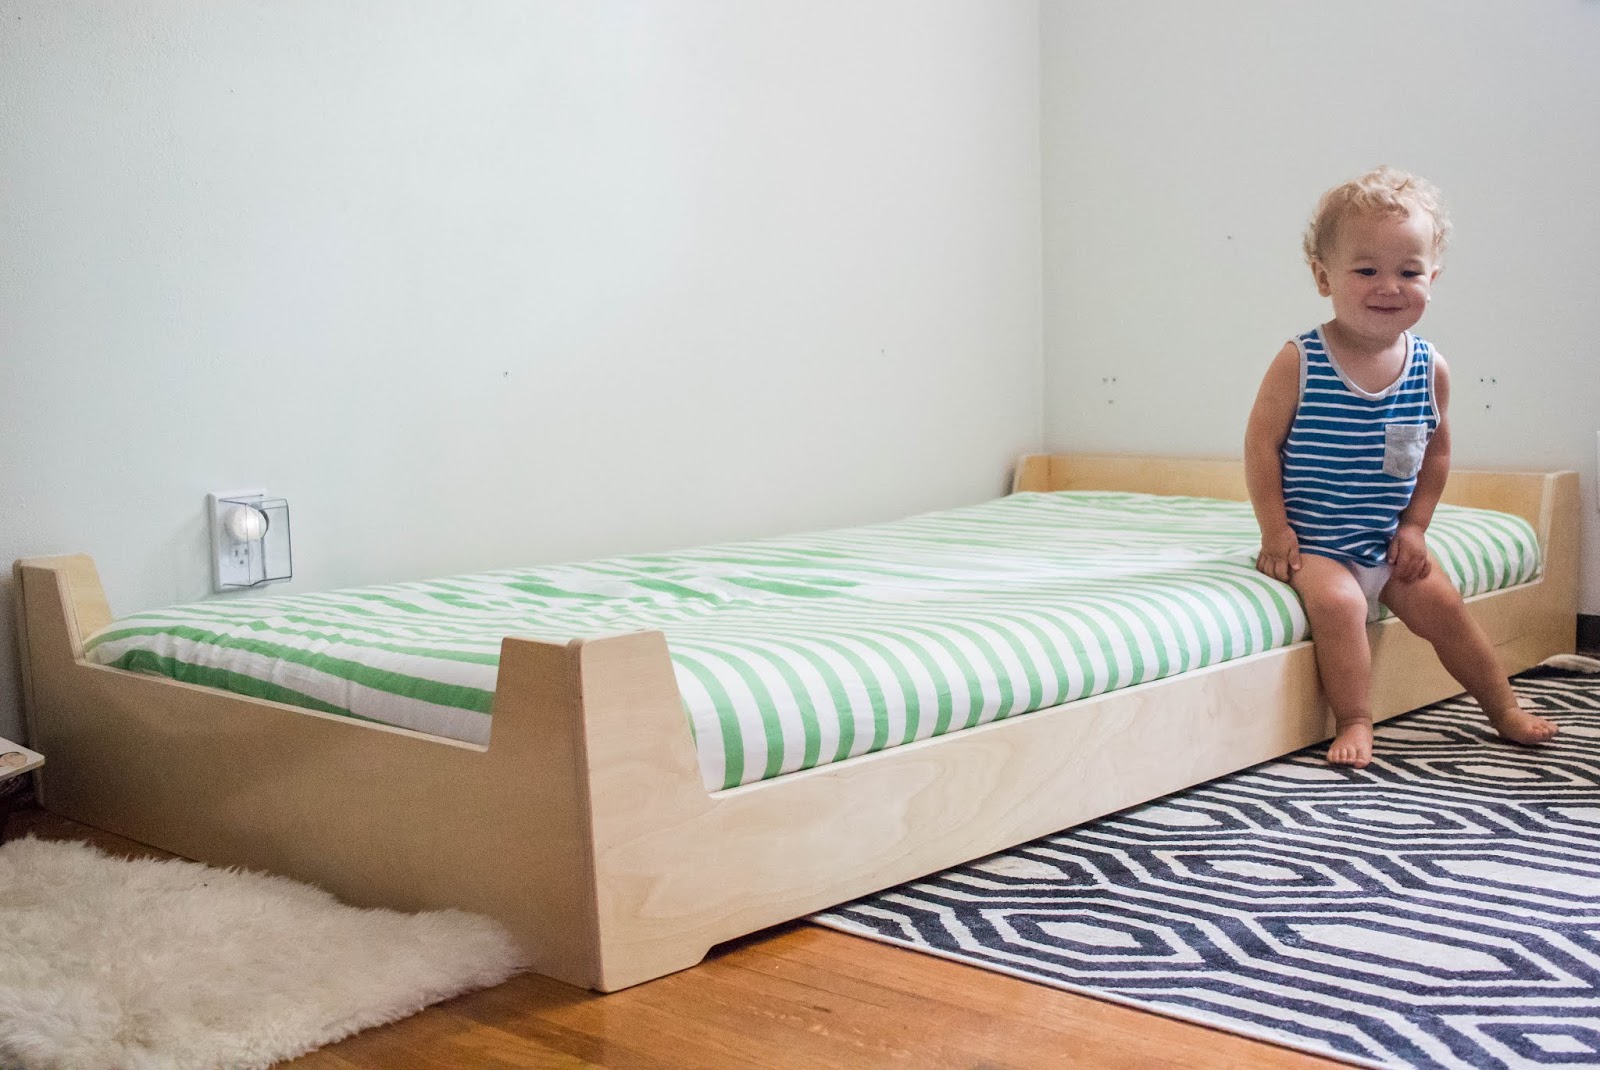 crib mattress on floor for toddler